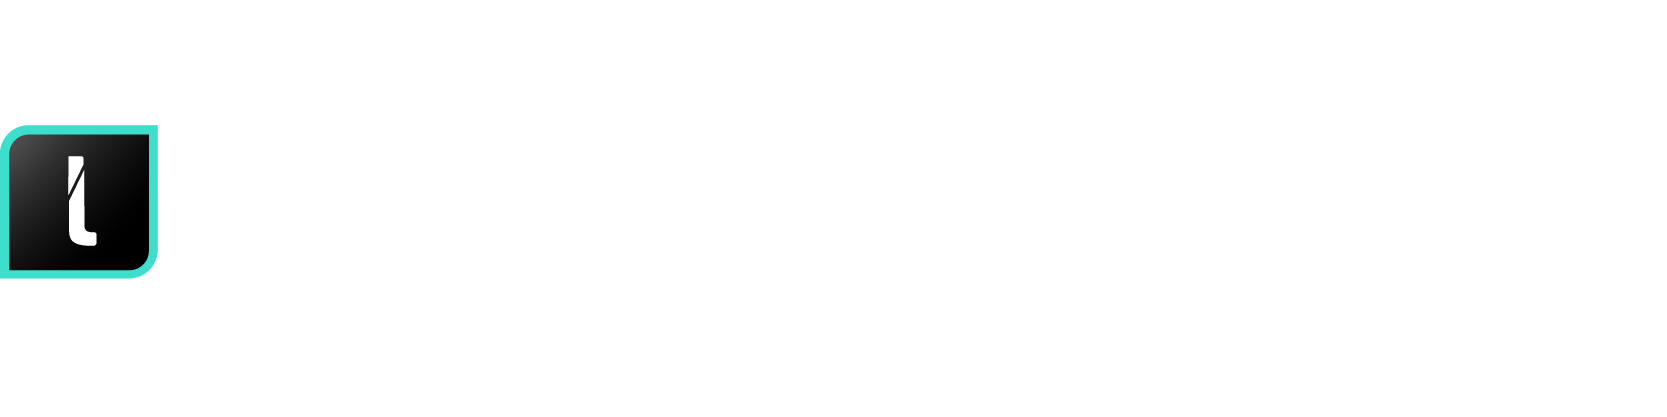 logo NODE-localize